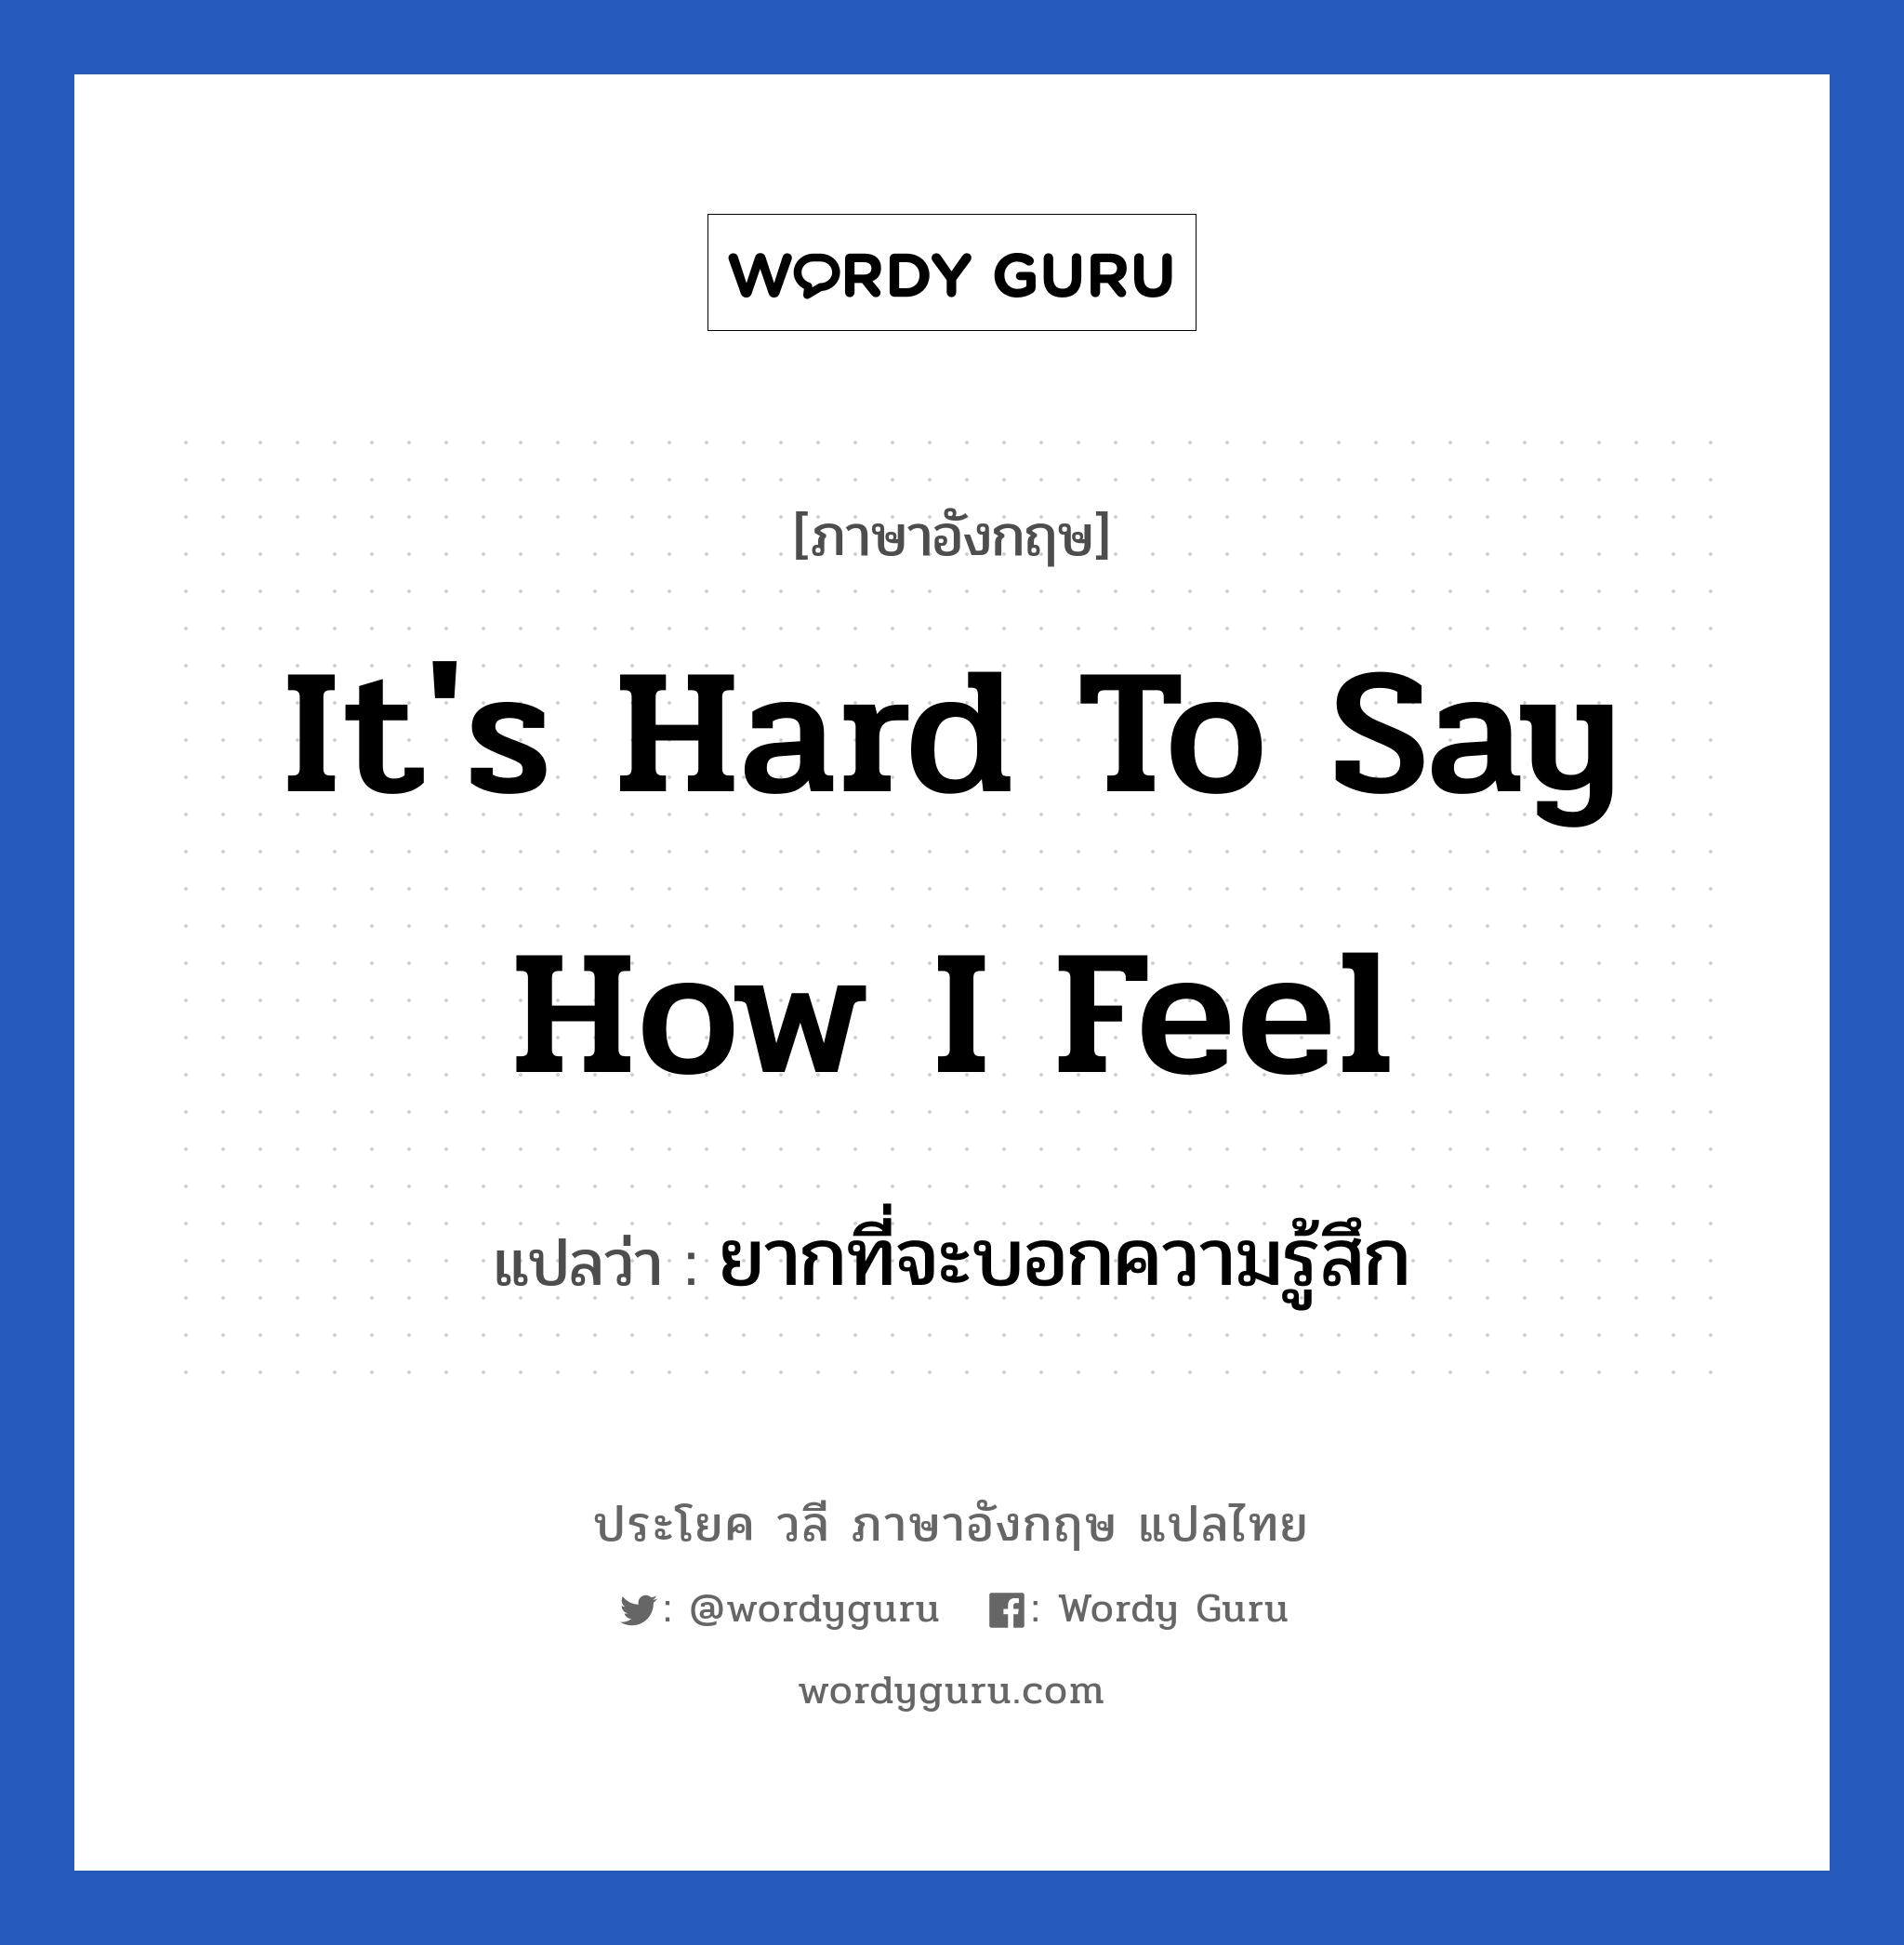 ยากที่จะบอกความรู้สึก ภาษาอังกฤษ?, วลีภาษาอังกฤษ ยากที่จะบอกความรู้สึก แปลว่า It's hard to say how I feel